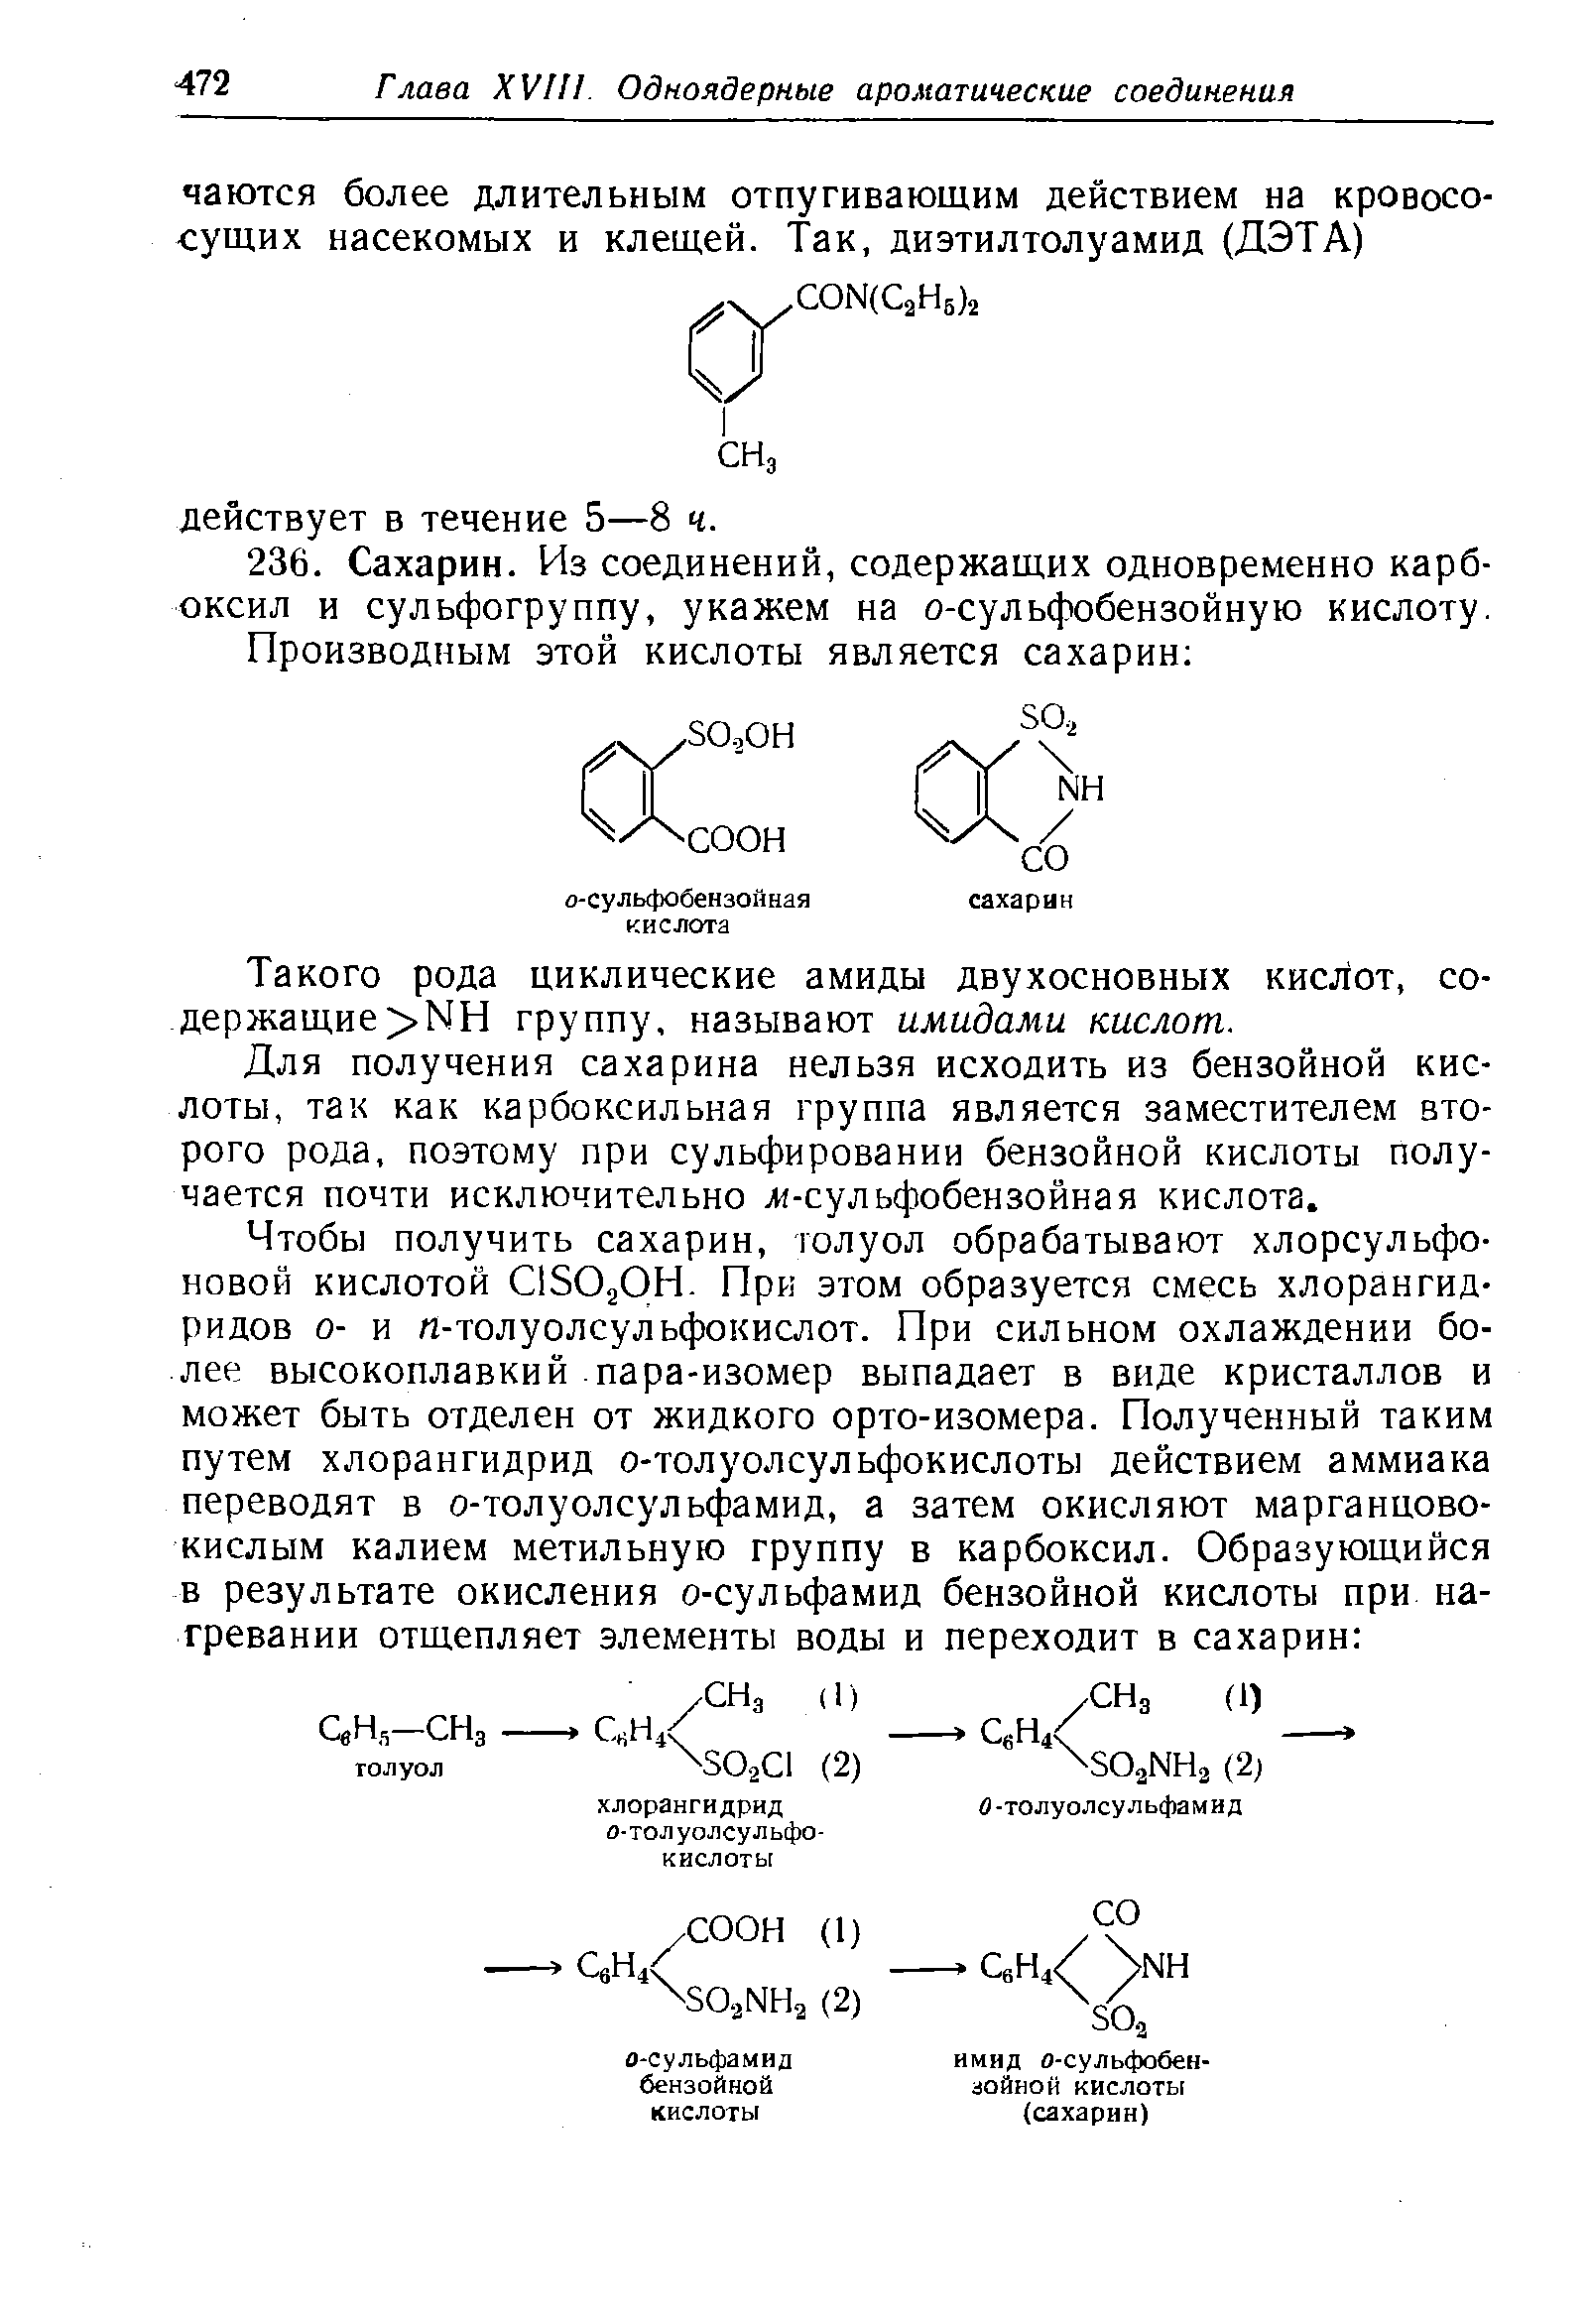 Такого рода циклические амиды двухосновных кислот, содержащие НН группу, называют амидами кислот.